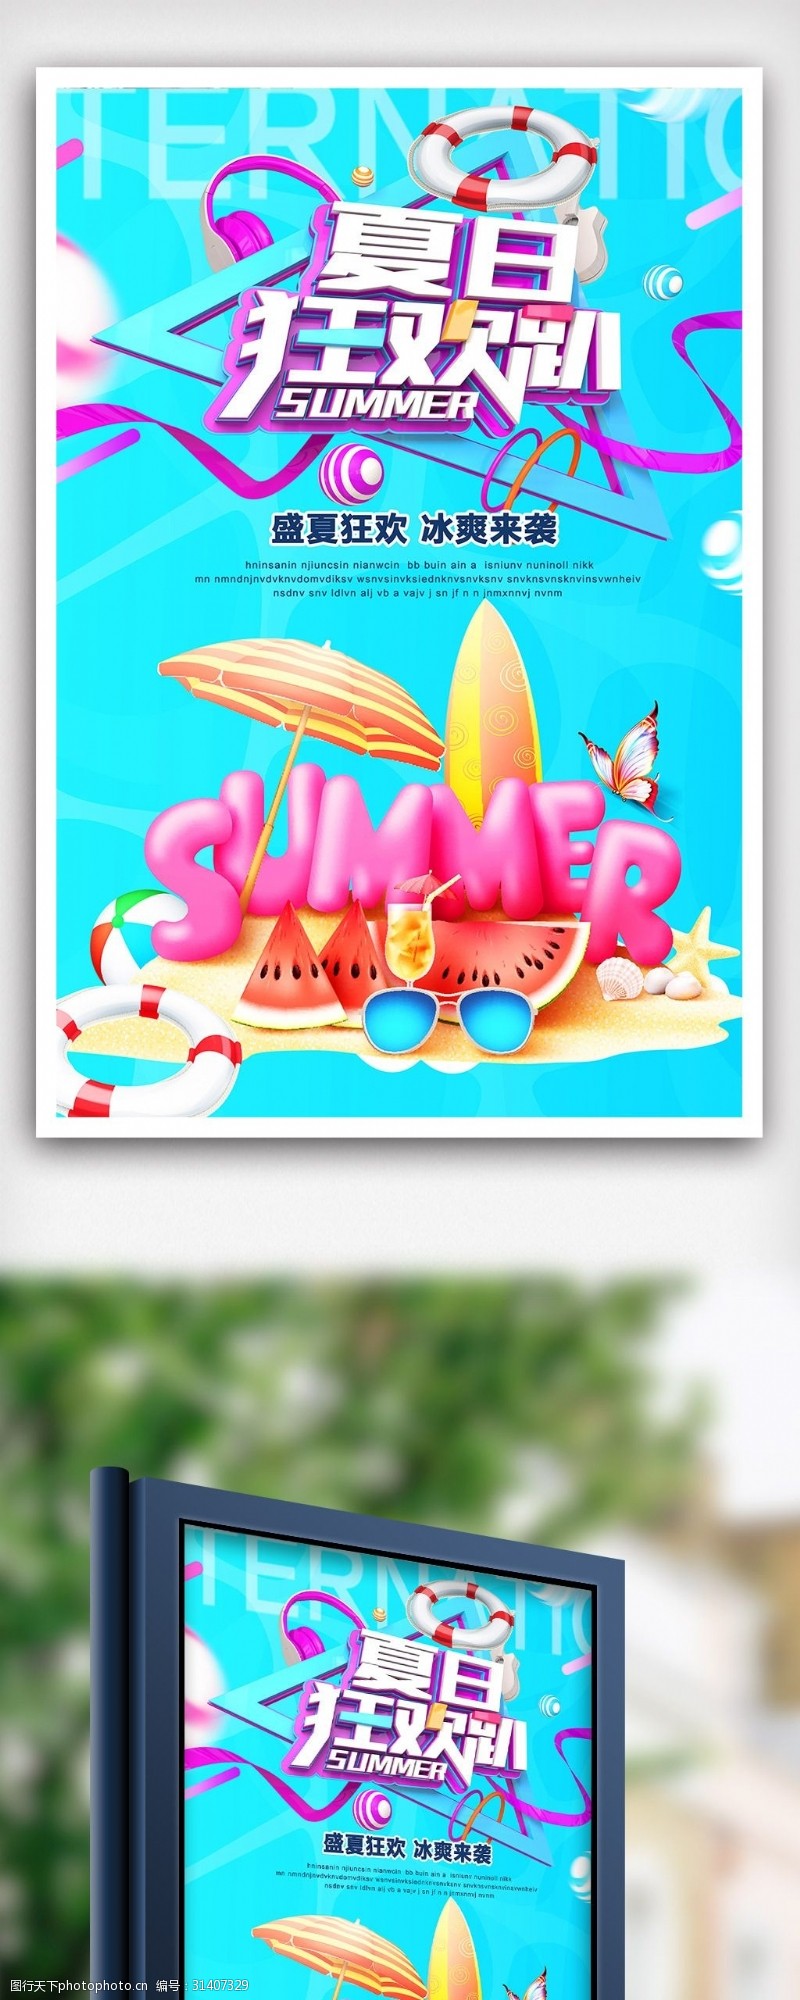 私人游泳池简洁大气夏日狂欢促销海报